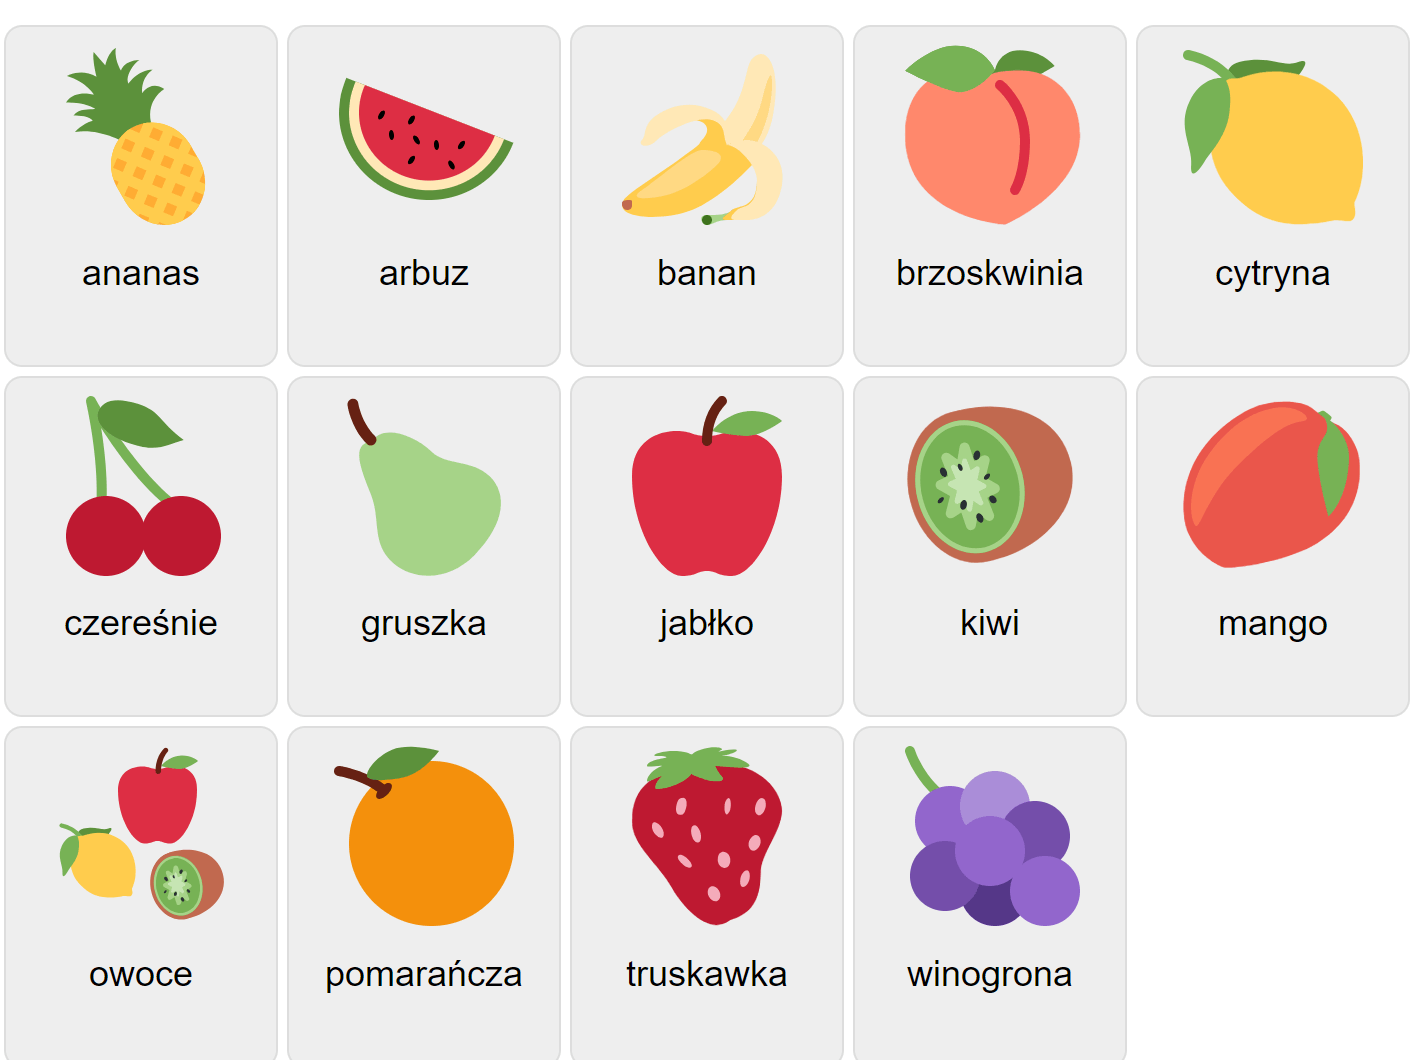 Früchte auf Polnisch